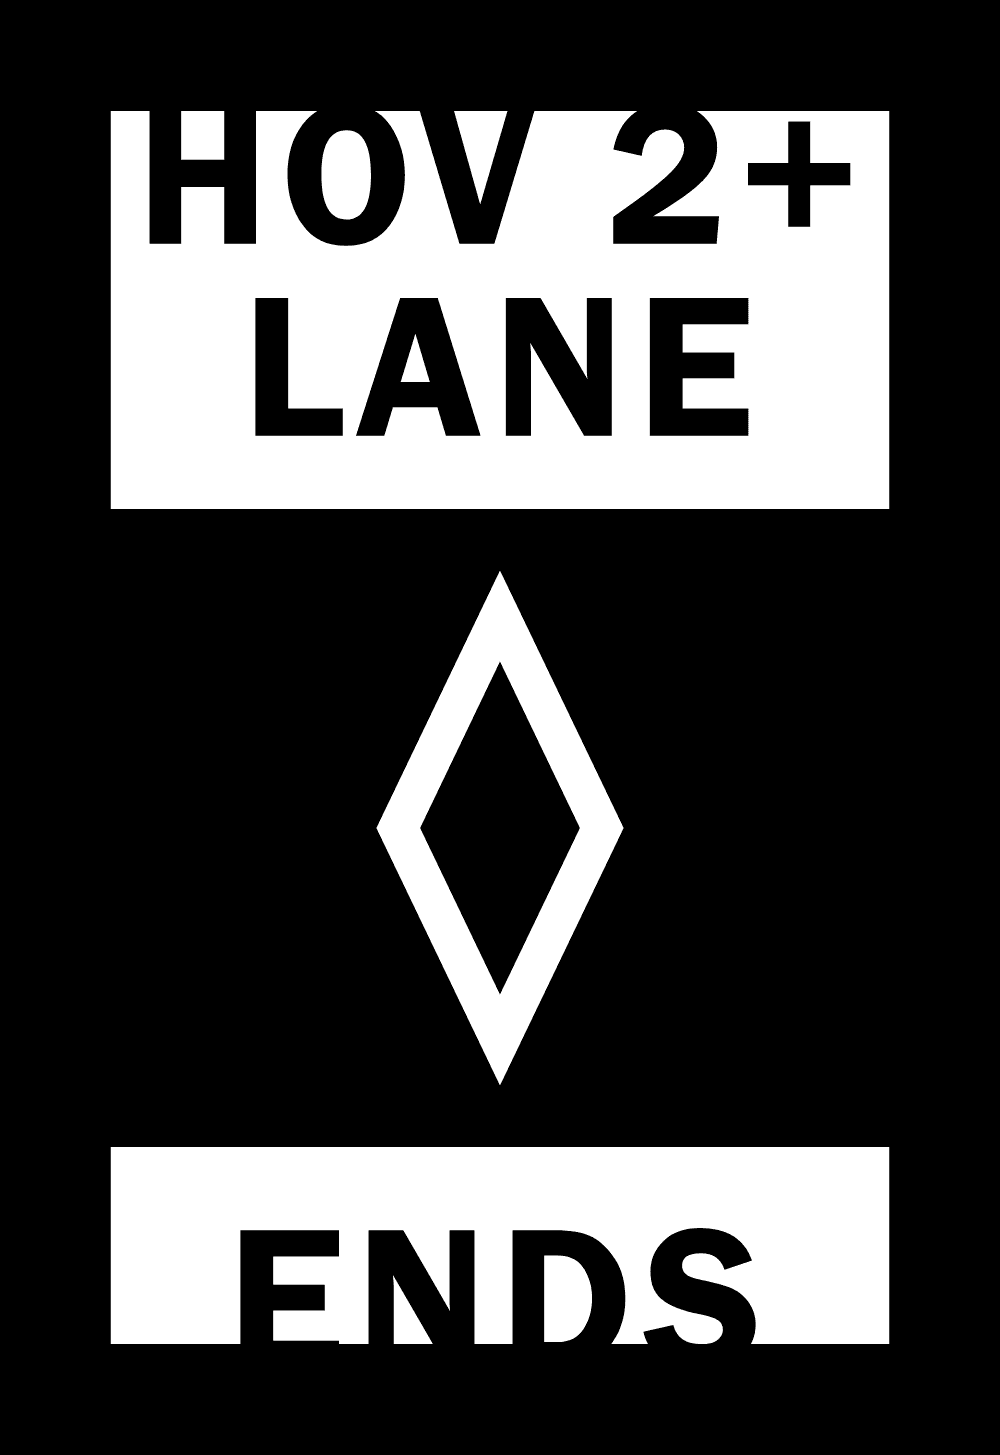 HOV 2+ LANE ENDS Logo download